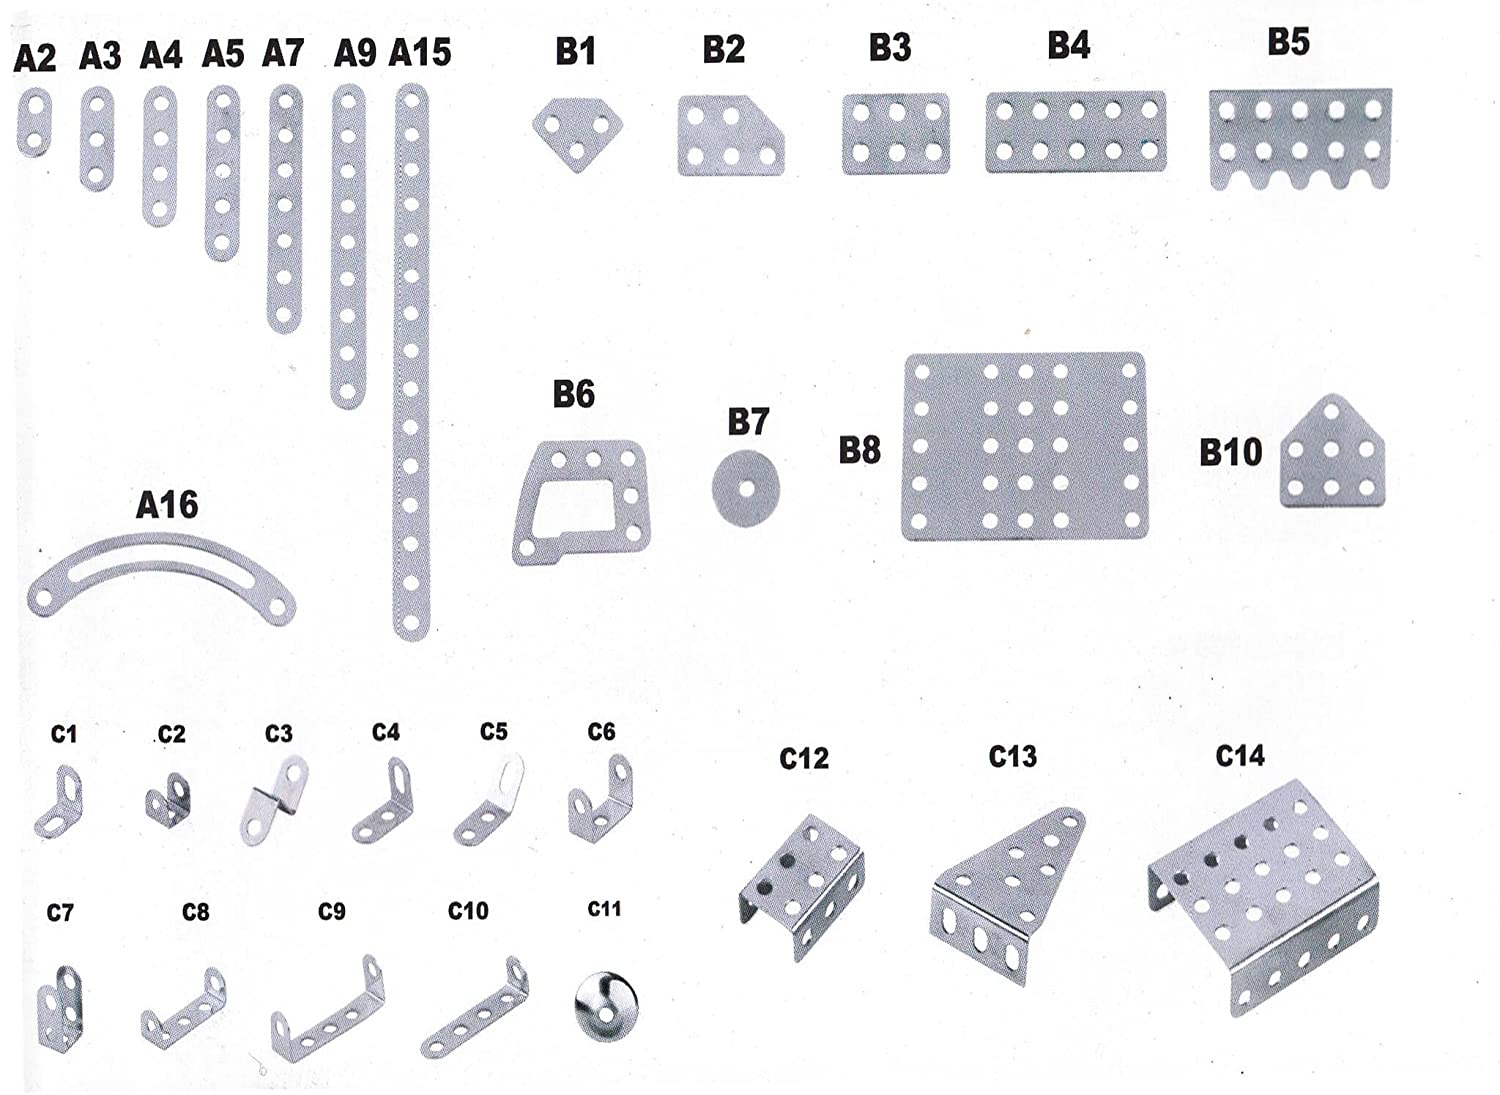 لعبة ميكانو - بناء وتركيب 30 نموذج - العاب البناء والتركيب